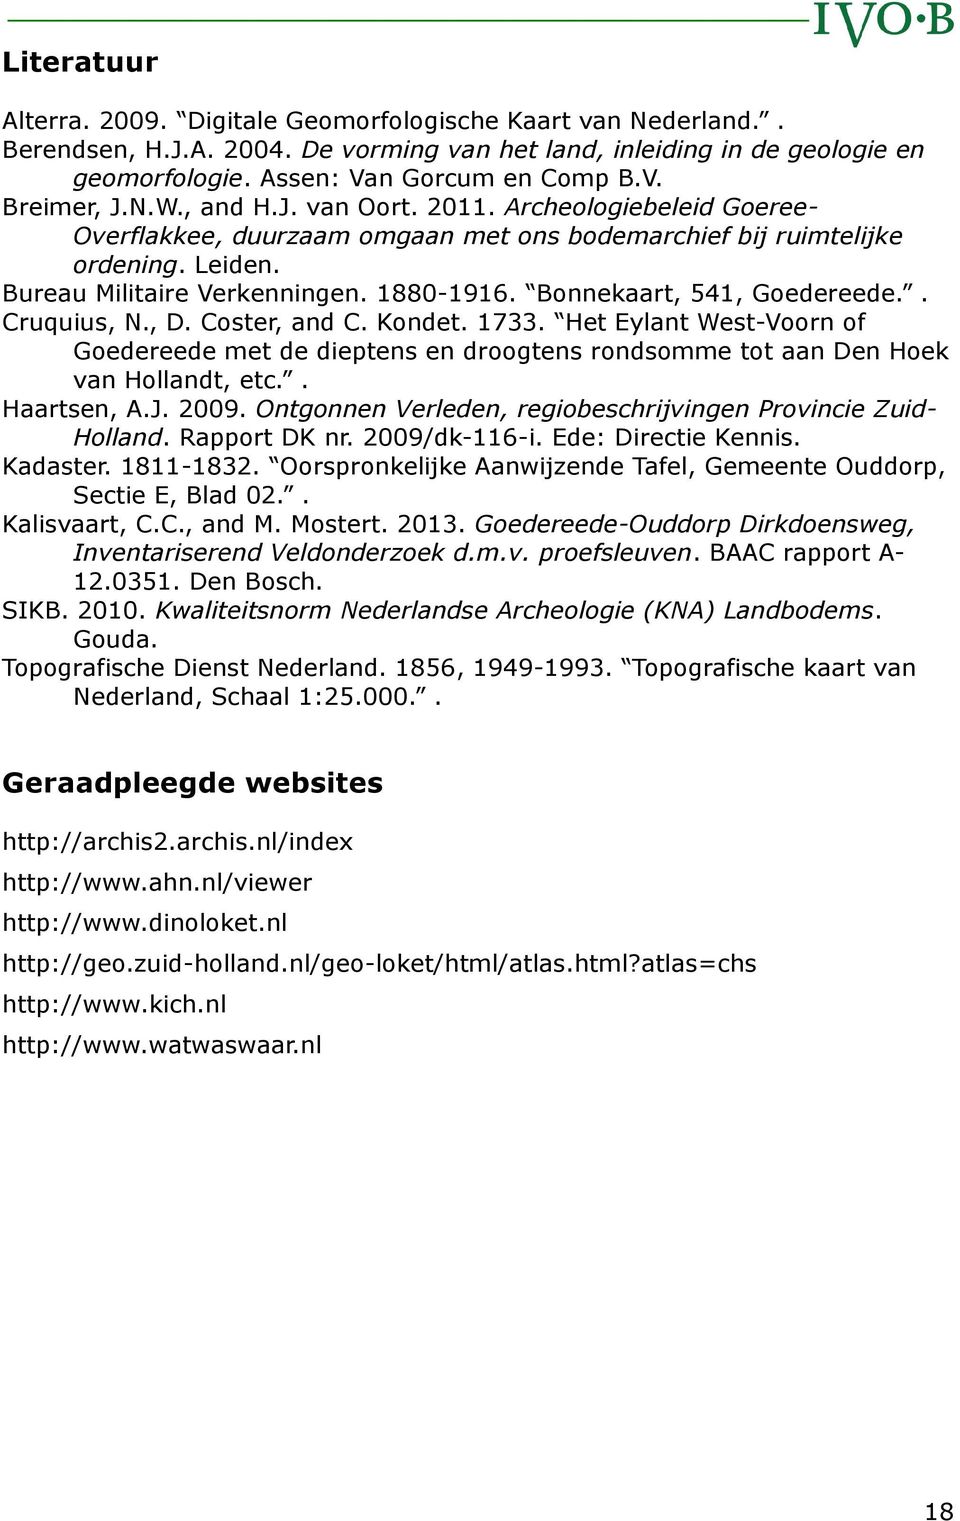 Bonnekaart, 541, Goedereede.. Cruquius, N., D. Coster, and C. Kondet. 1733. Het Eylant West-Voorn of Goedereede met de dieptens en droogtens rondsomme tot aan Den Hoek van Hollandt, etc.. Haartsen, A.